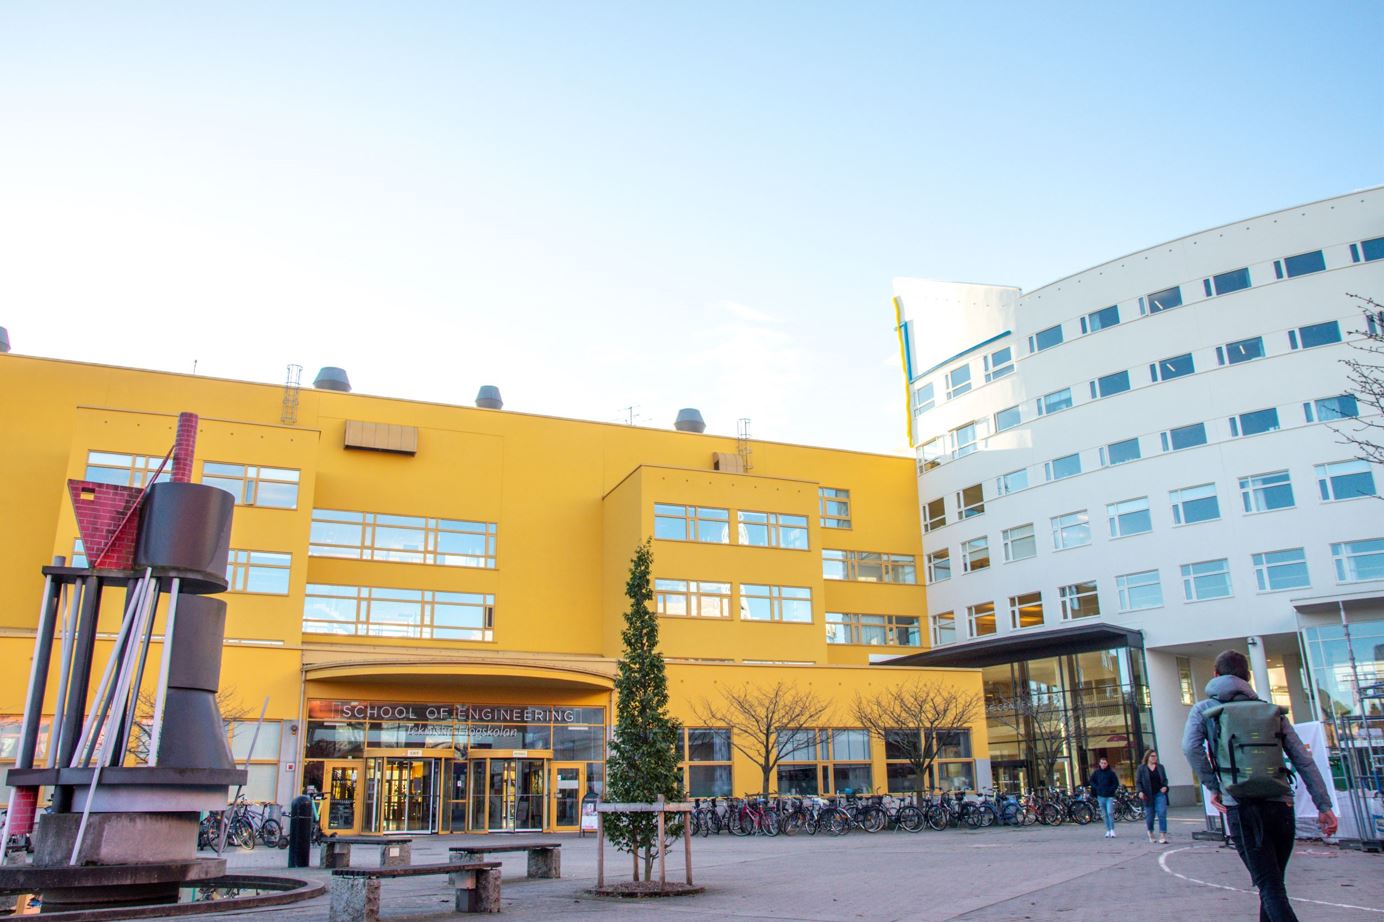 The School of Engineering at Jönköping University.